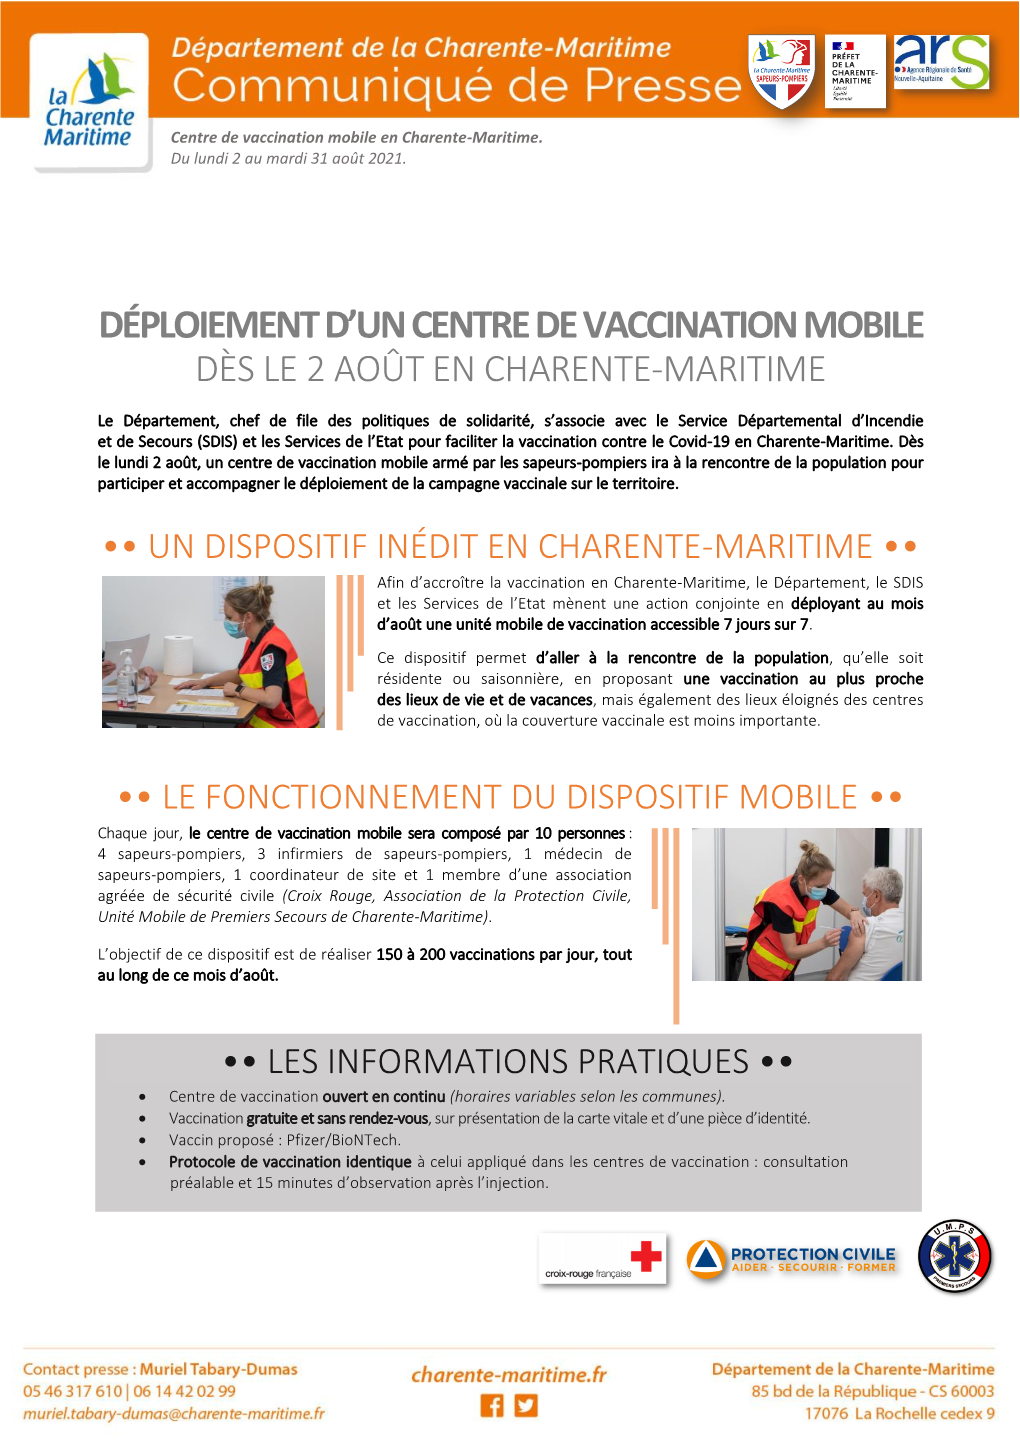 Le Département Déploie Un Centre De Vaccination Mobile En Charente